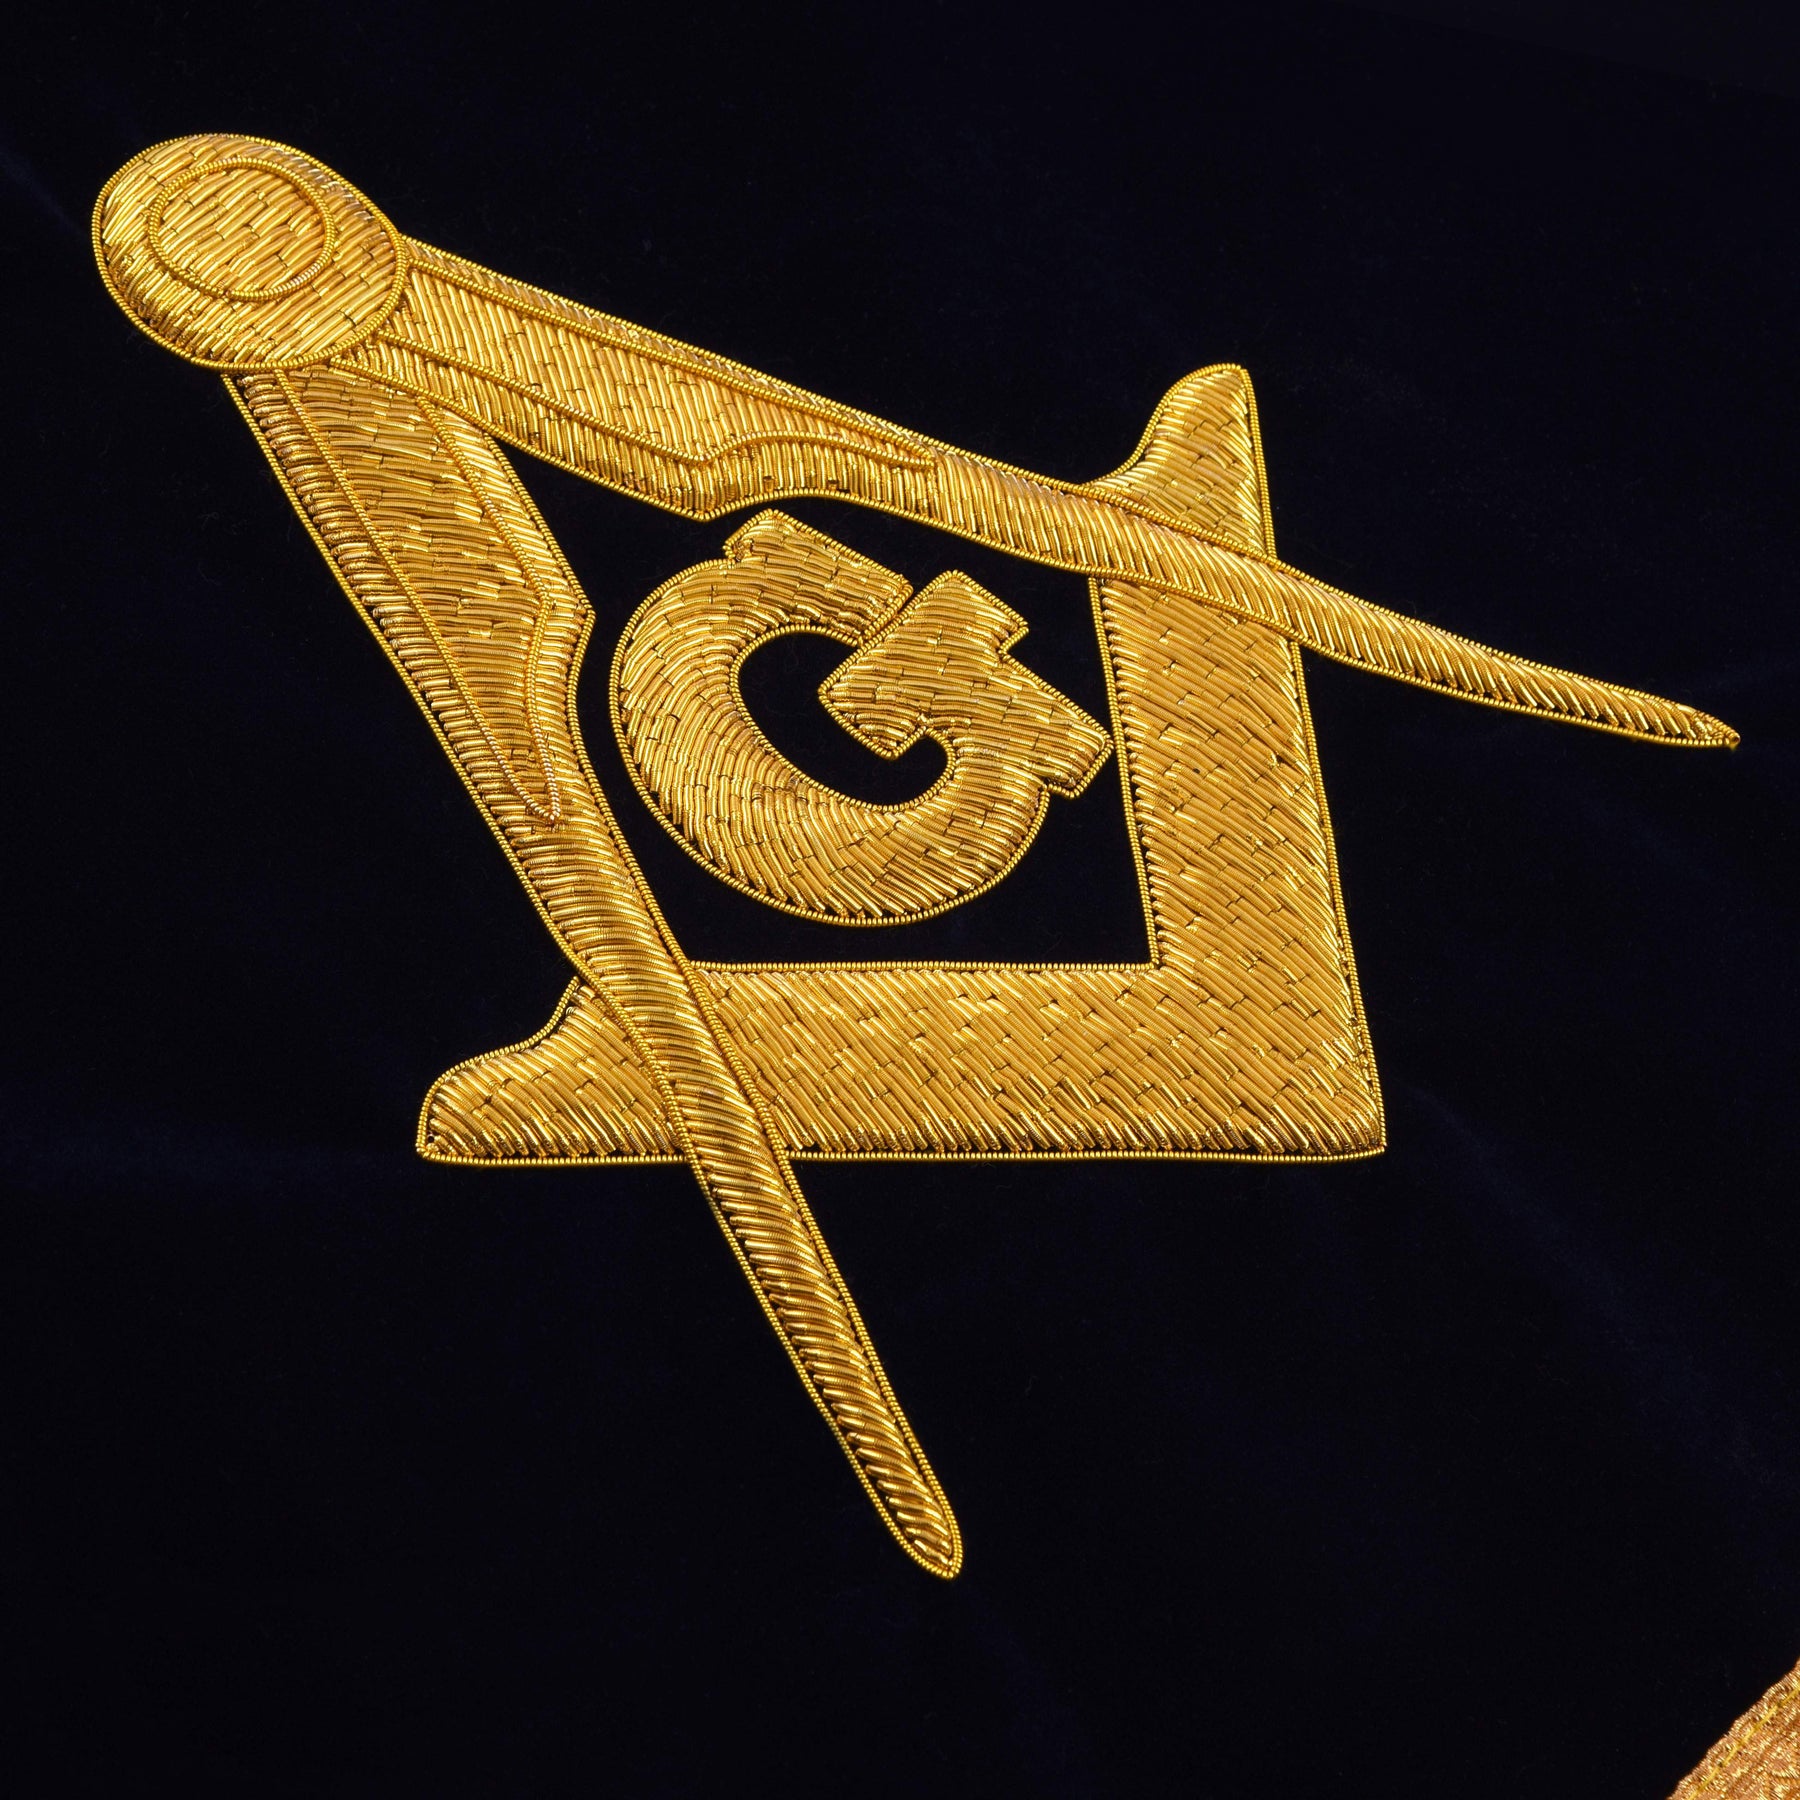 Master Mason Blue Lodge Pedestal Cover - Dark Blue Velvet With Gold Bullion & Fringe - Bricks Masons